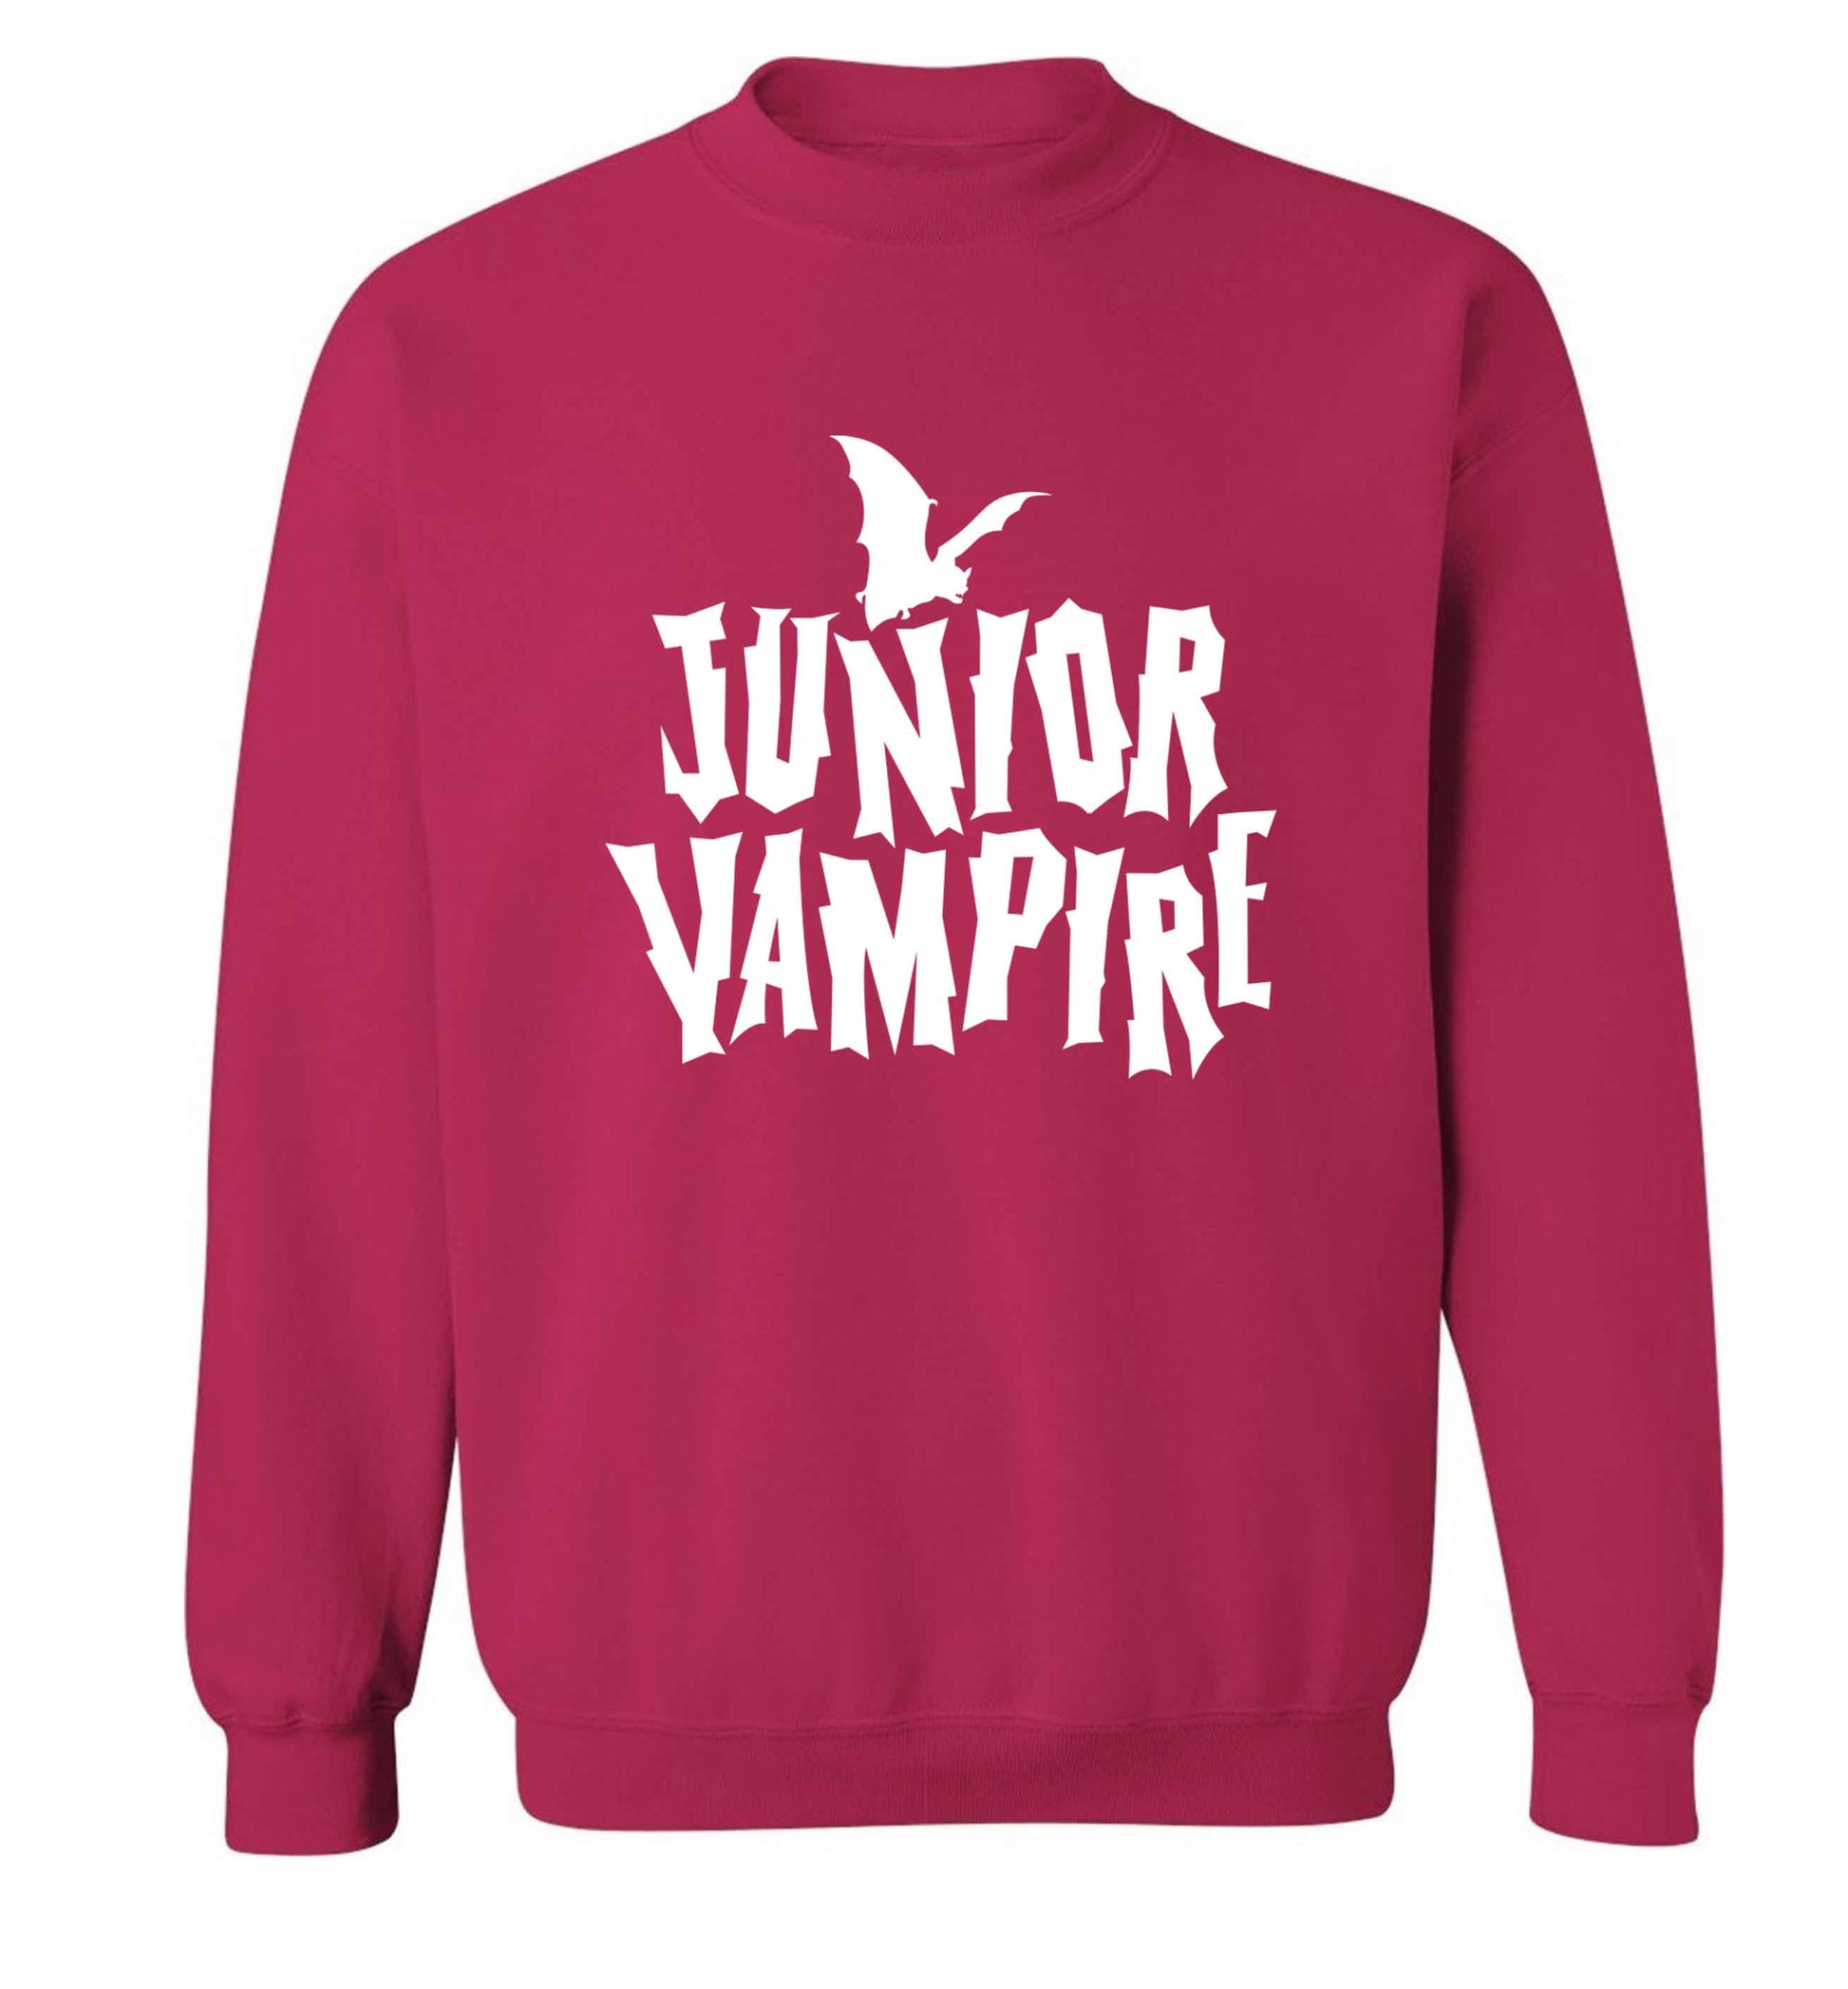 Junior vampire adult's unisex pink sweater 2XL